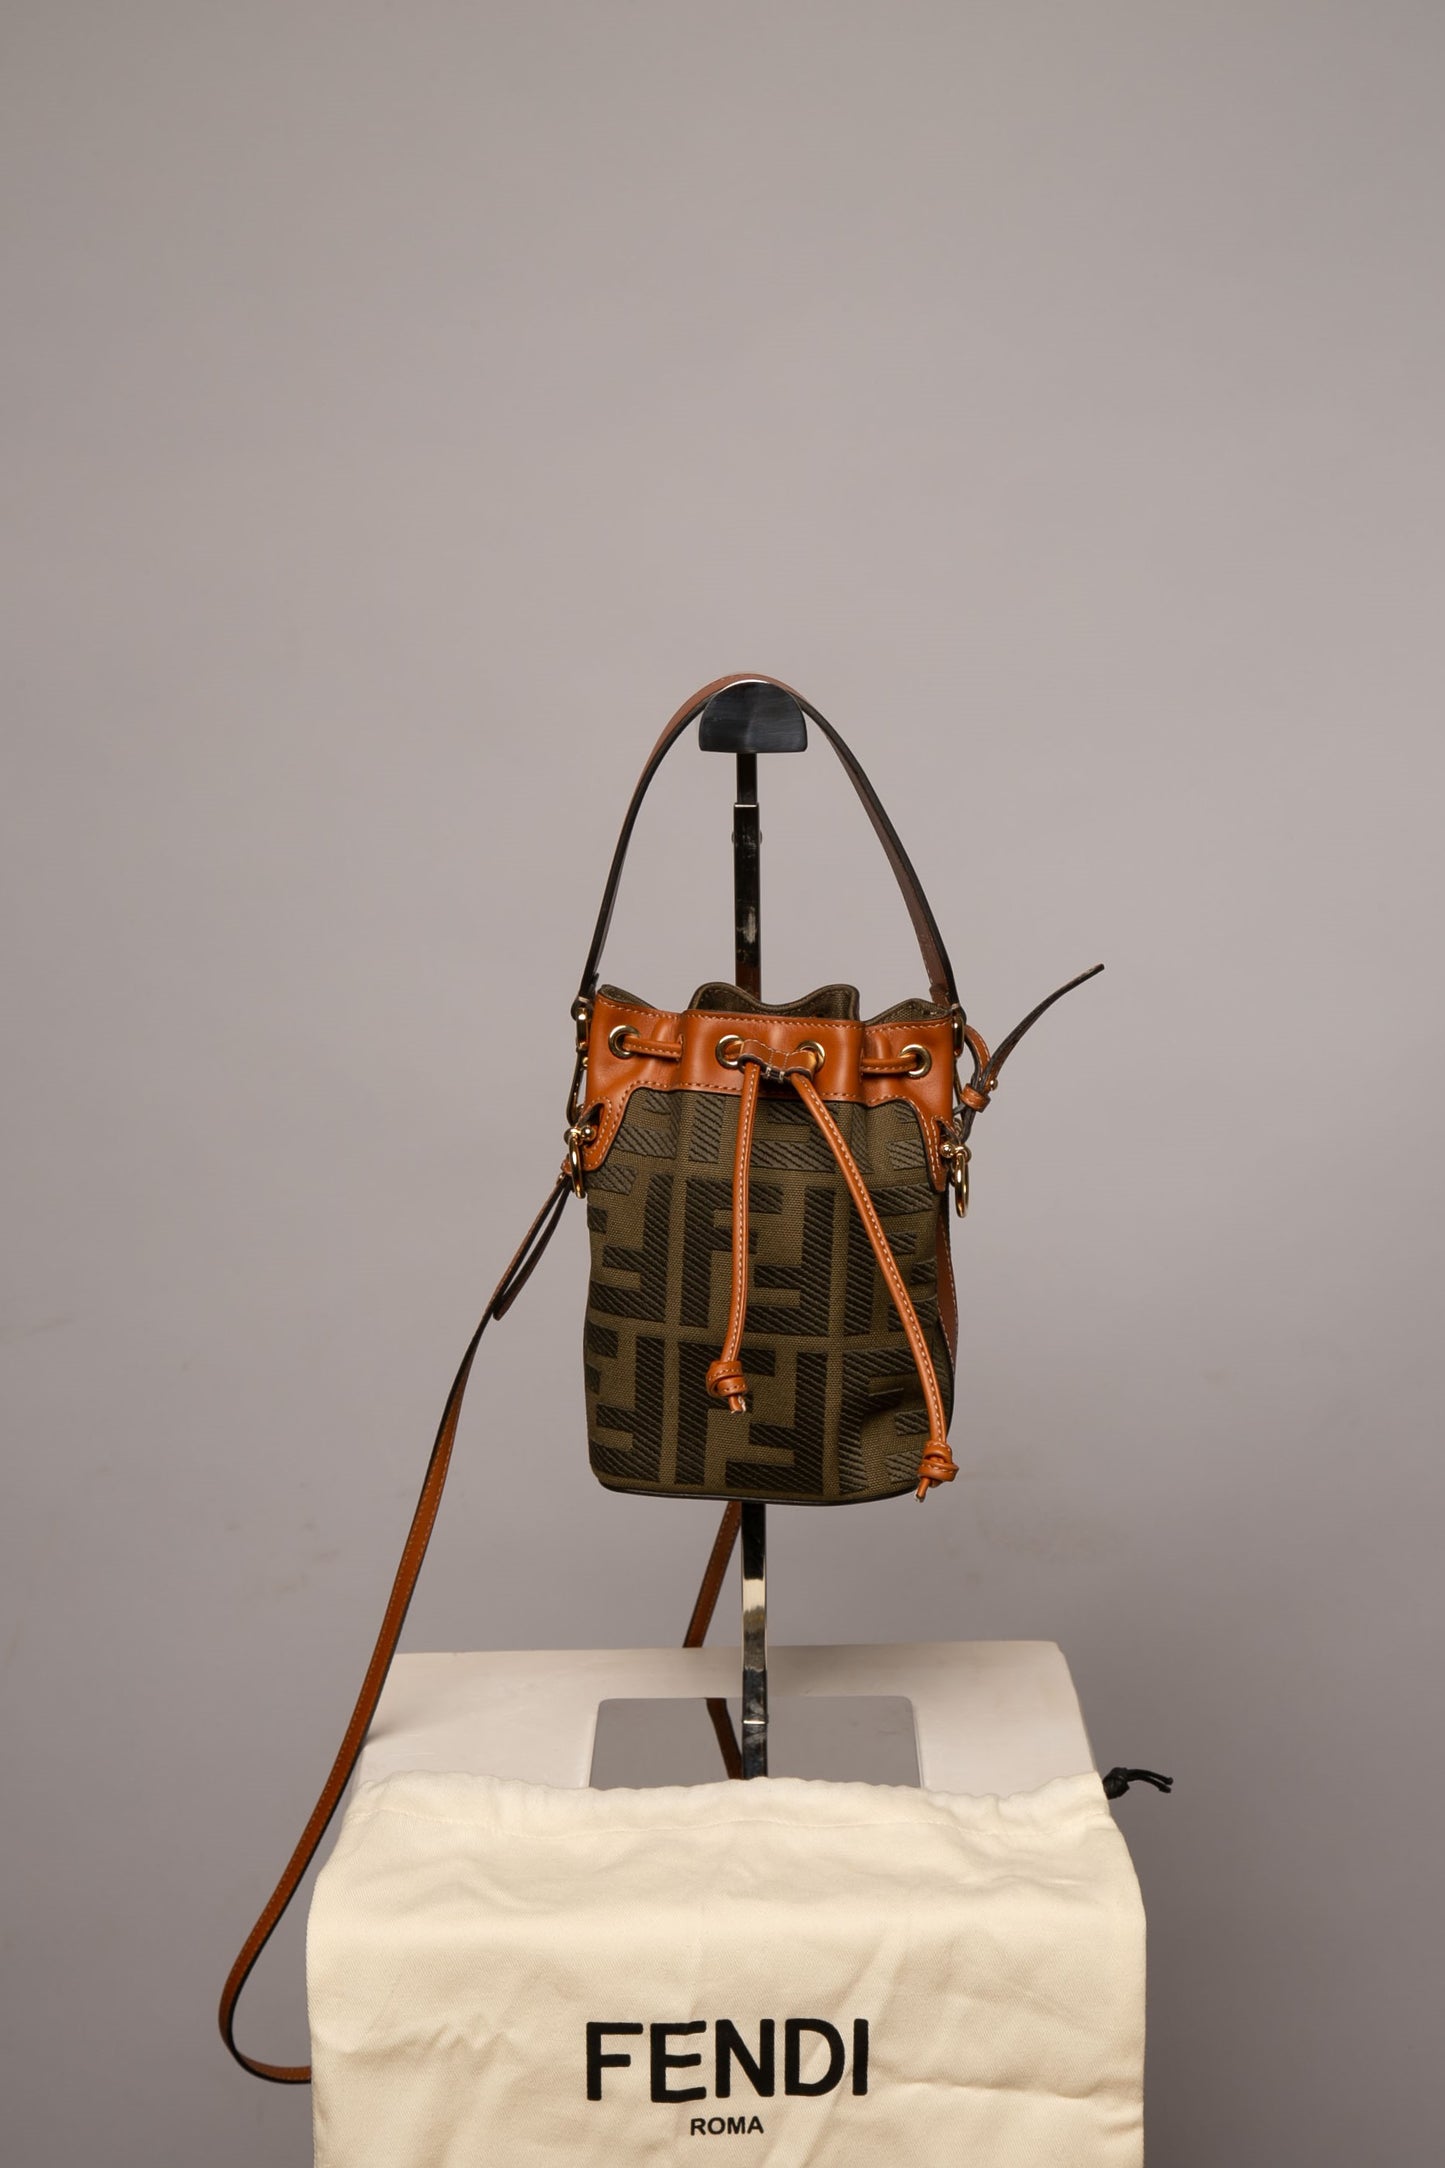 Fendi  Fendi bags, Bags, Fashion bags